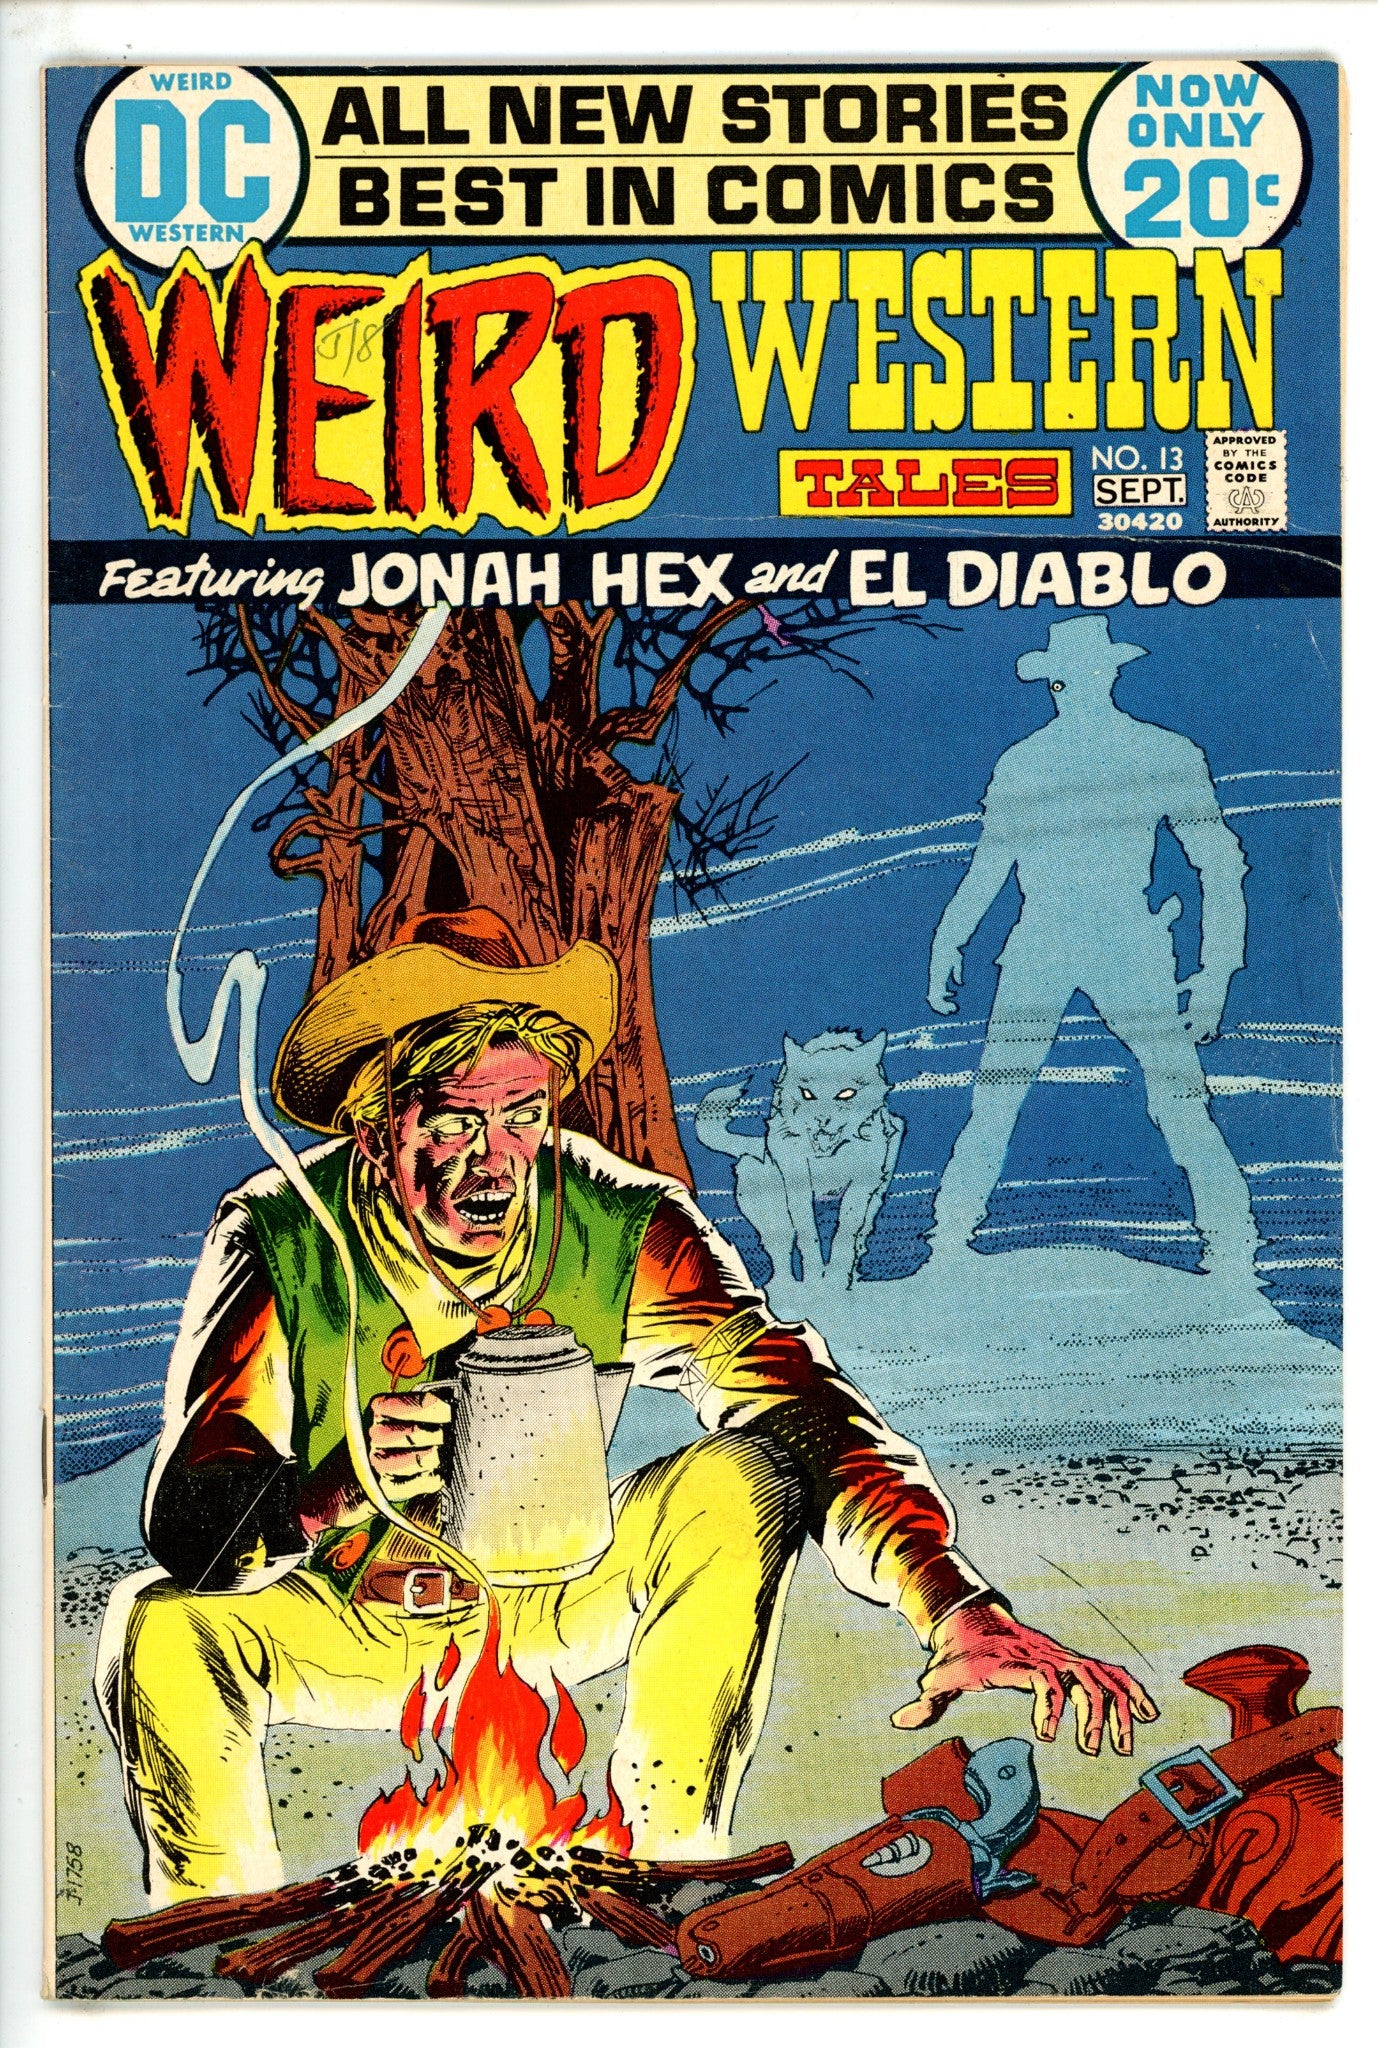 Weird Western Tales Vol 1 13 FN- (1972)